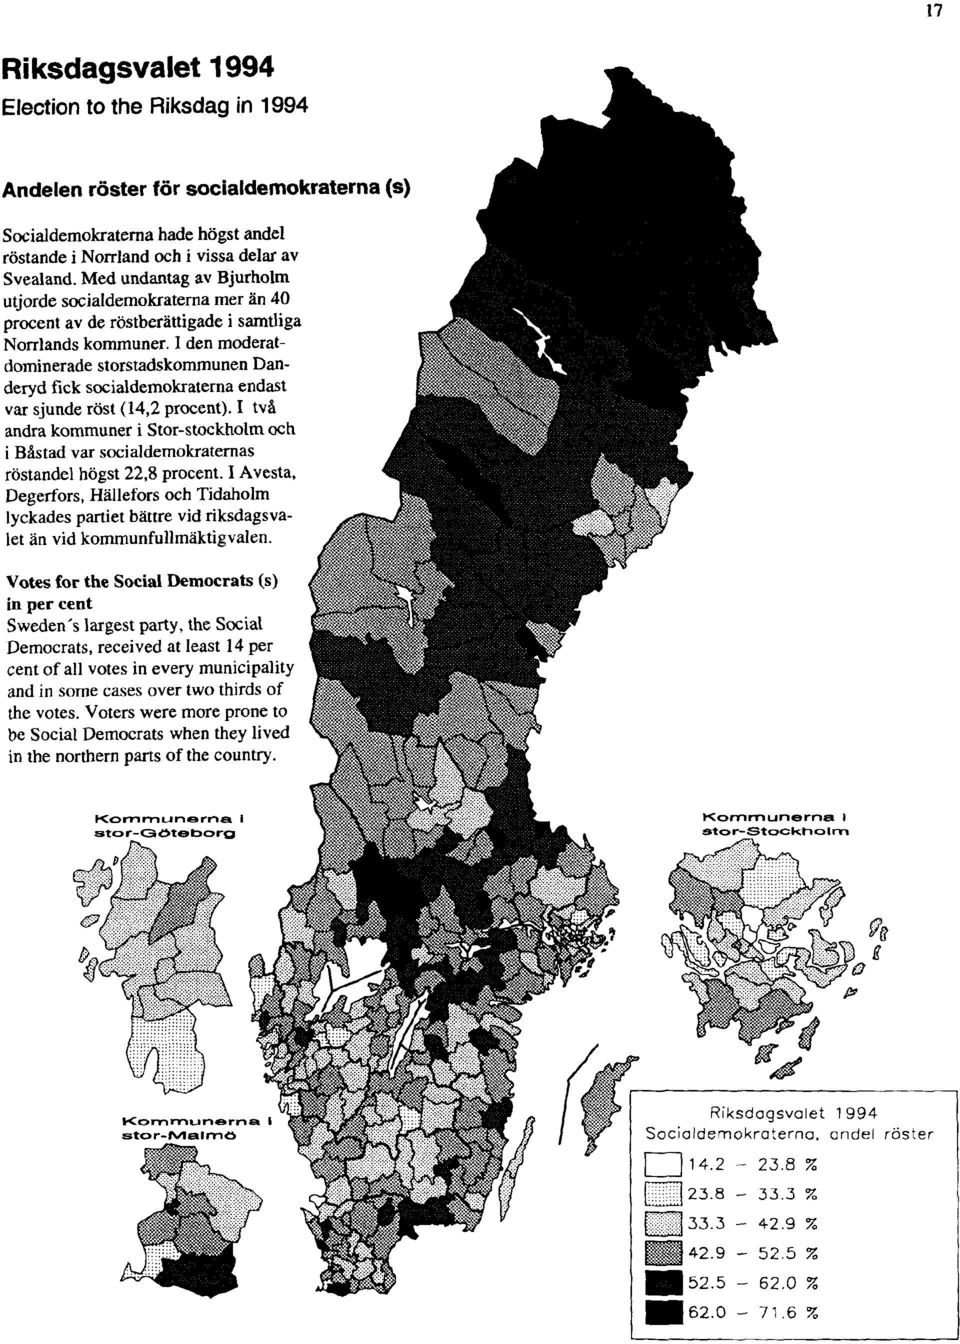 I den moderatdominerade storstadskommunen Danderyd fick socialdemokraterna endast var sjunde röst (14,2 procent).